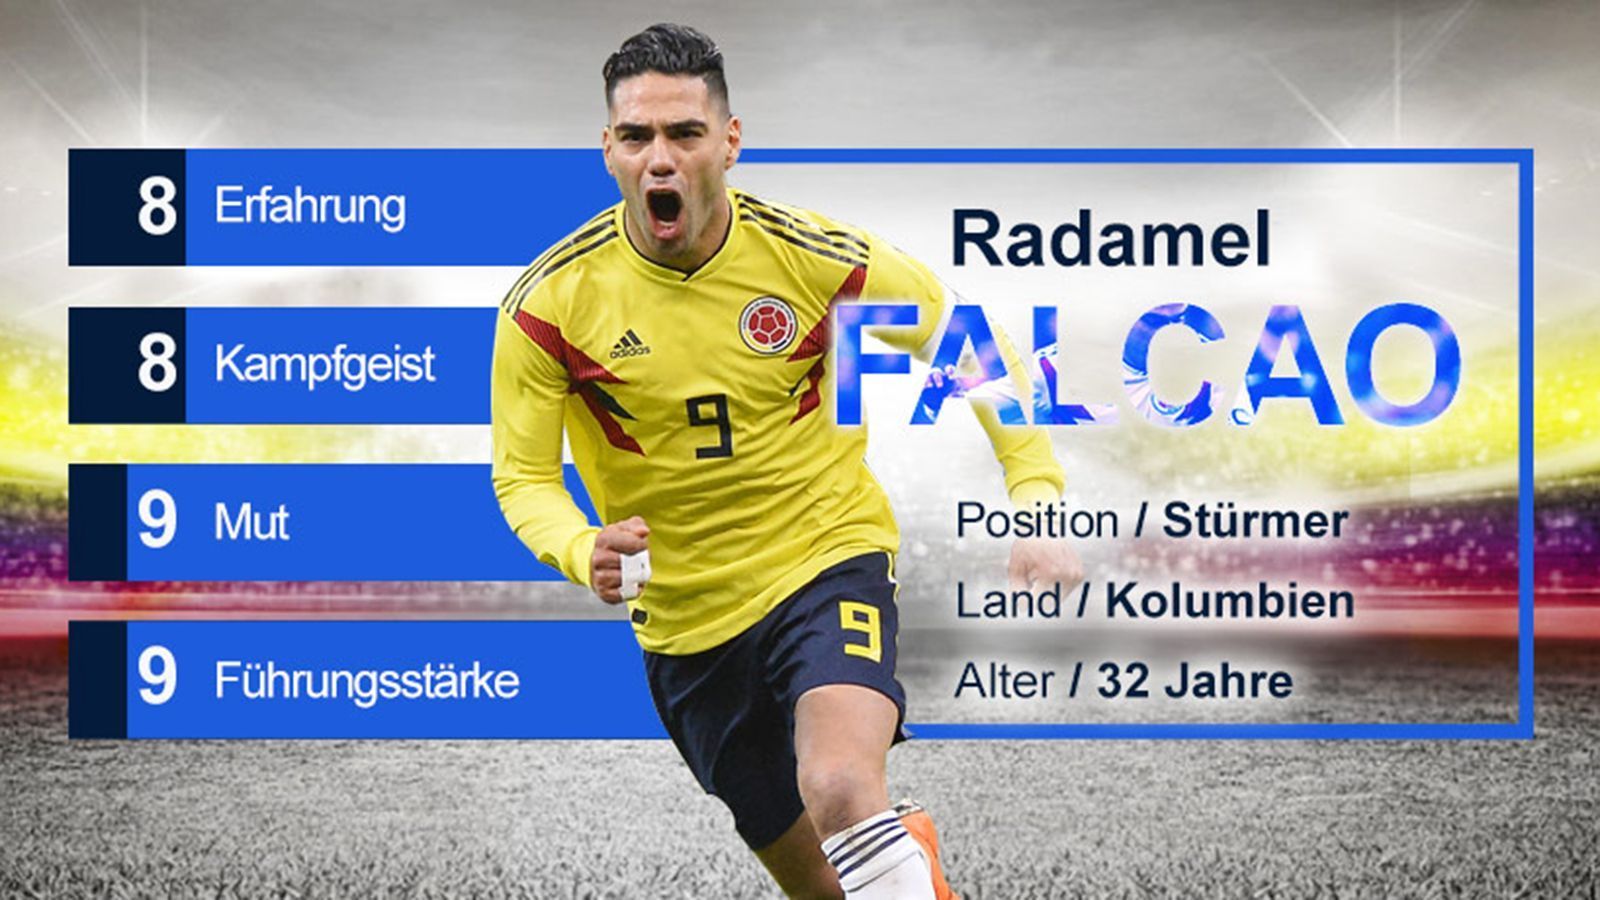 
                <strong>Radamel Falcao (Kolumbien) - Gruppe H</strong><br>
                Radamel Falcao ist Rekordtorjäger Kolumbiens (29 Tore) und neben Bayerns James Rodriguez das Aushängeschild der Kolumbianer. Durch seine schwere Verletzung zurückgeworfen, verpasste er aufgrund schwacher Form einen Großteil der WM-Qualifikationsspiele – trotzdem ist er in der Mannschaft hoch angesehen und führte Kolumbien bereits bei der Copa America 2015 als Kapitän an. Falcao gilt als mutiger und kampfstarker Mittelstürmer, der sein Team mit großem Willen führt.
              